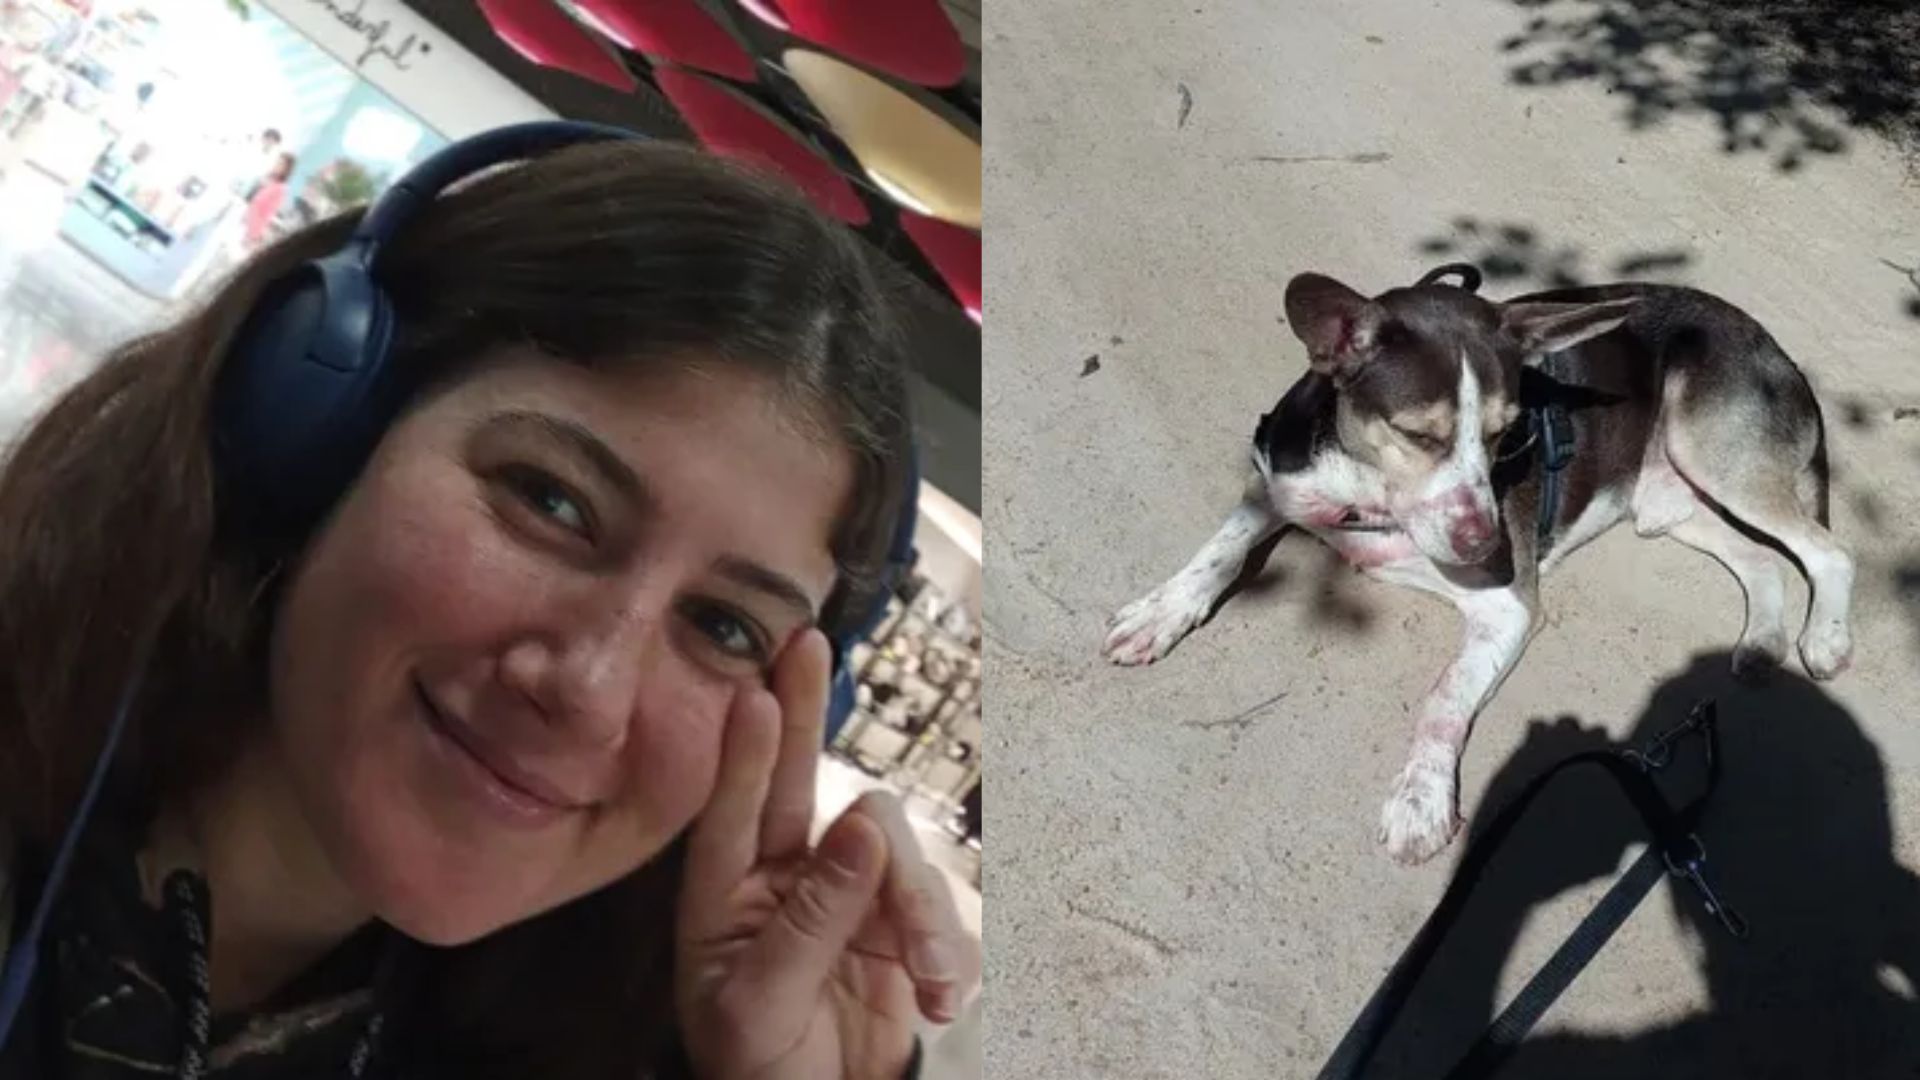 Argentina de 31 anos é assassinada em praia de Búzios, RJ; cachorro da vítima teria ajudado a identificar o suspeito